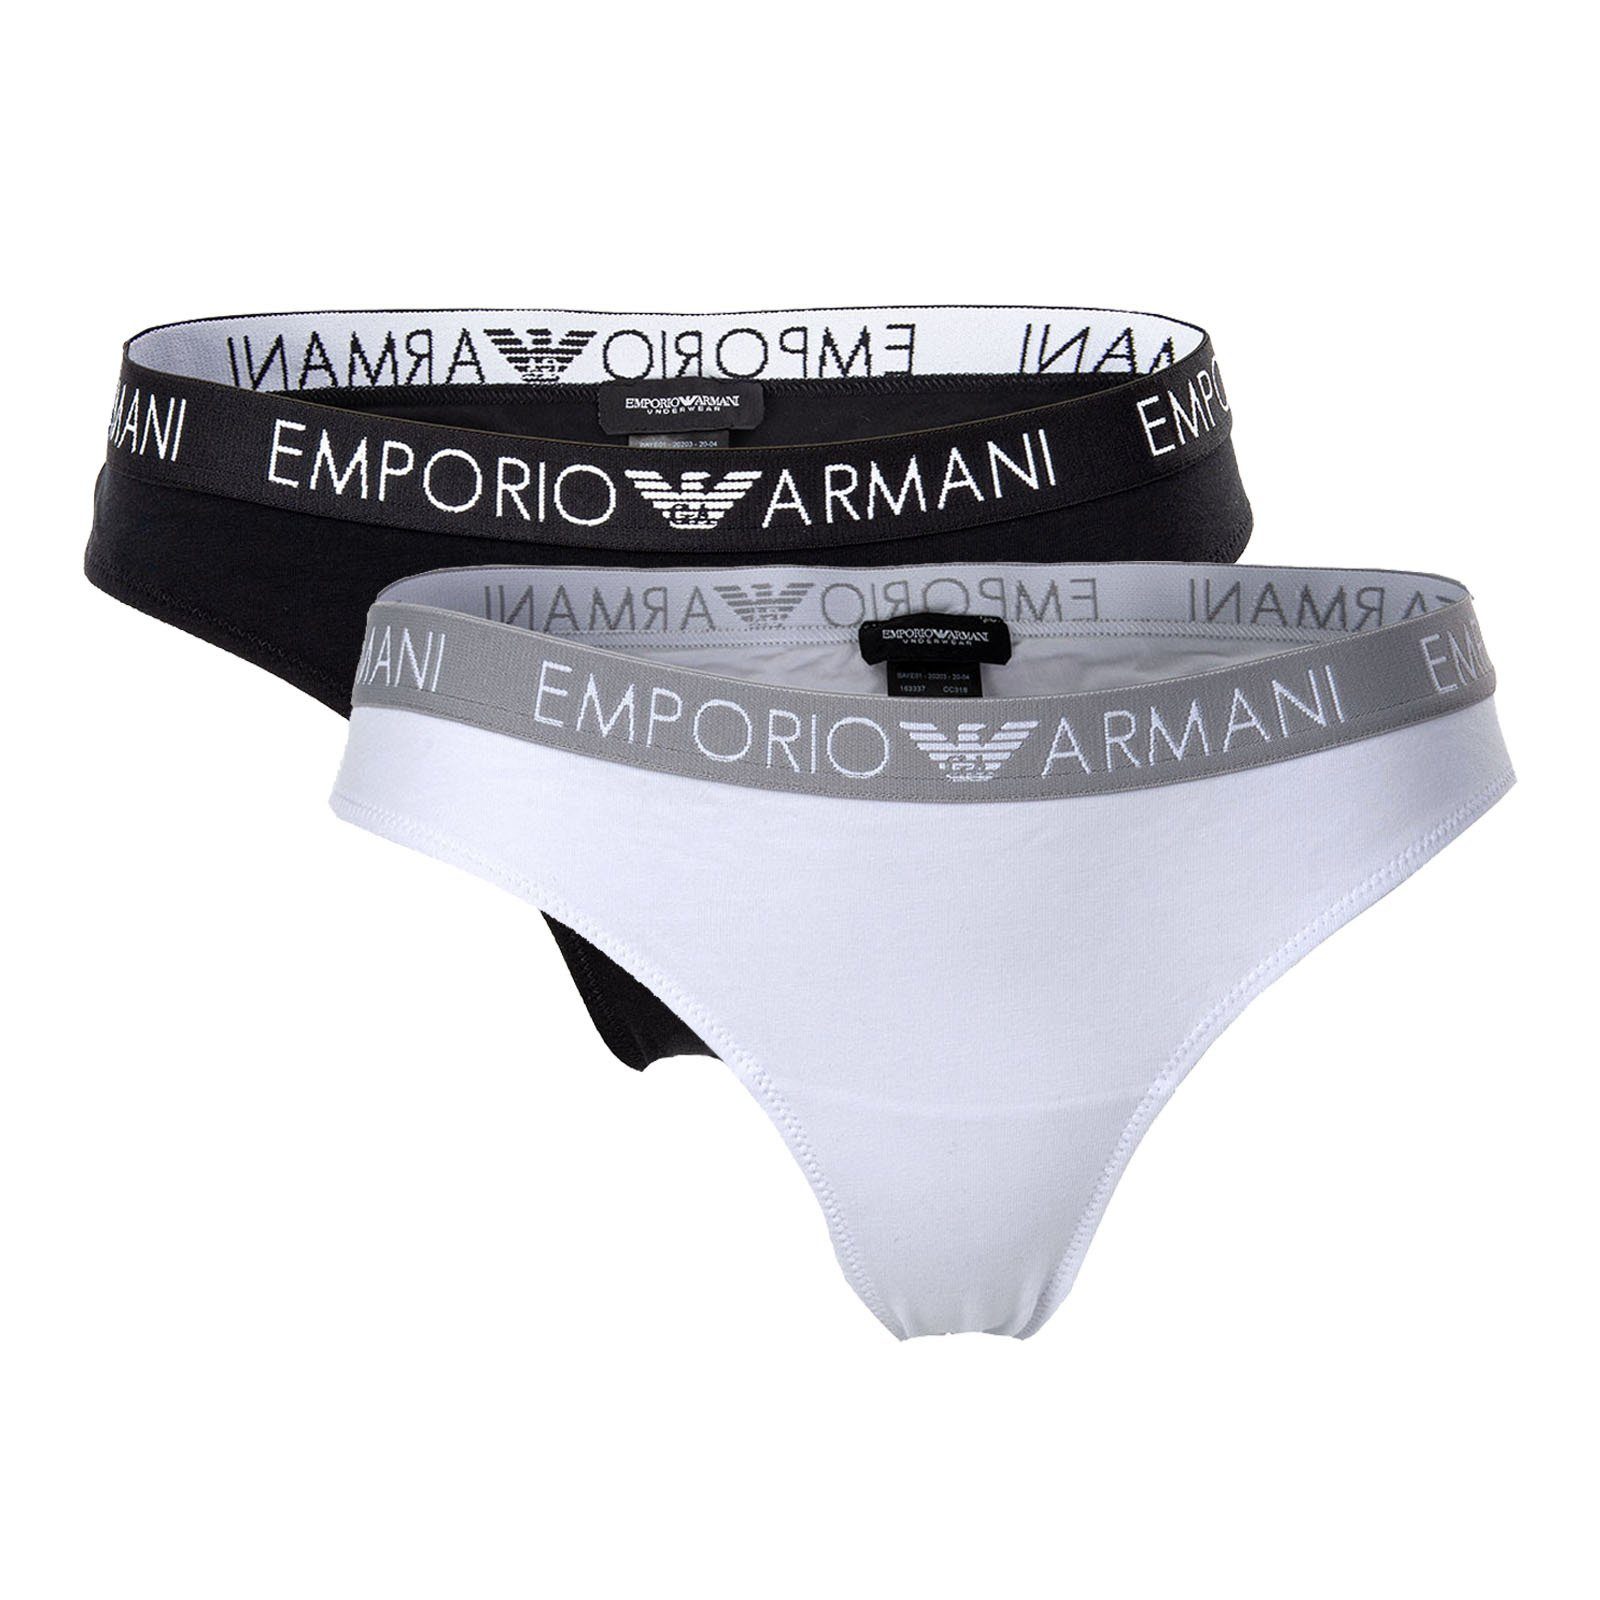 Damen Stretch Weiß/Schwarz Brazilian Slips, Briefs Armani Pack Slip - Emporio 2er